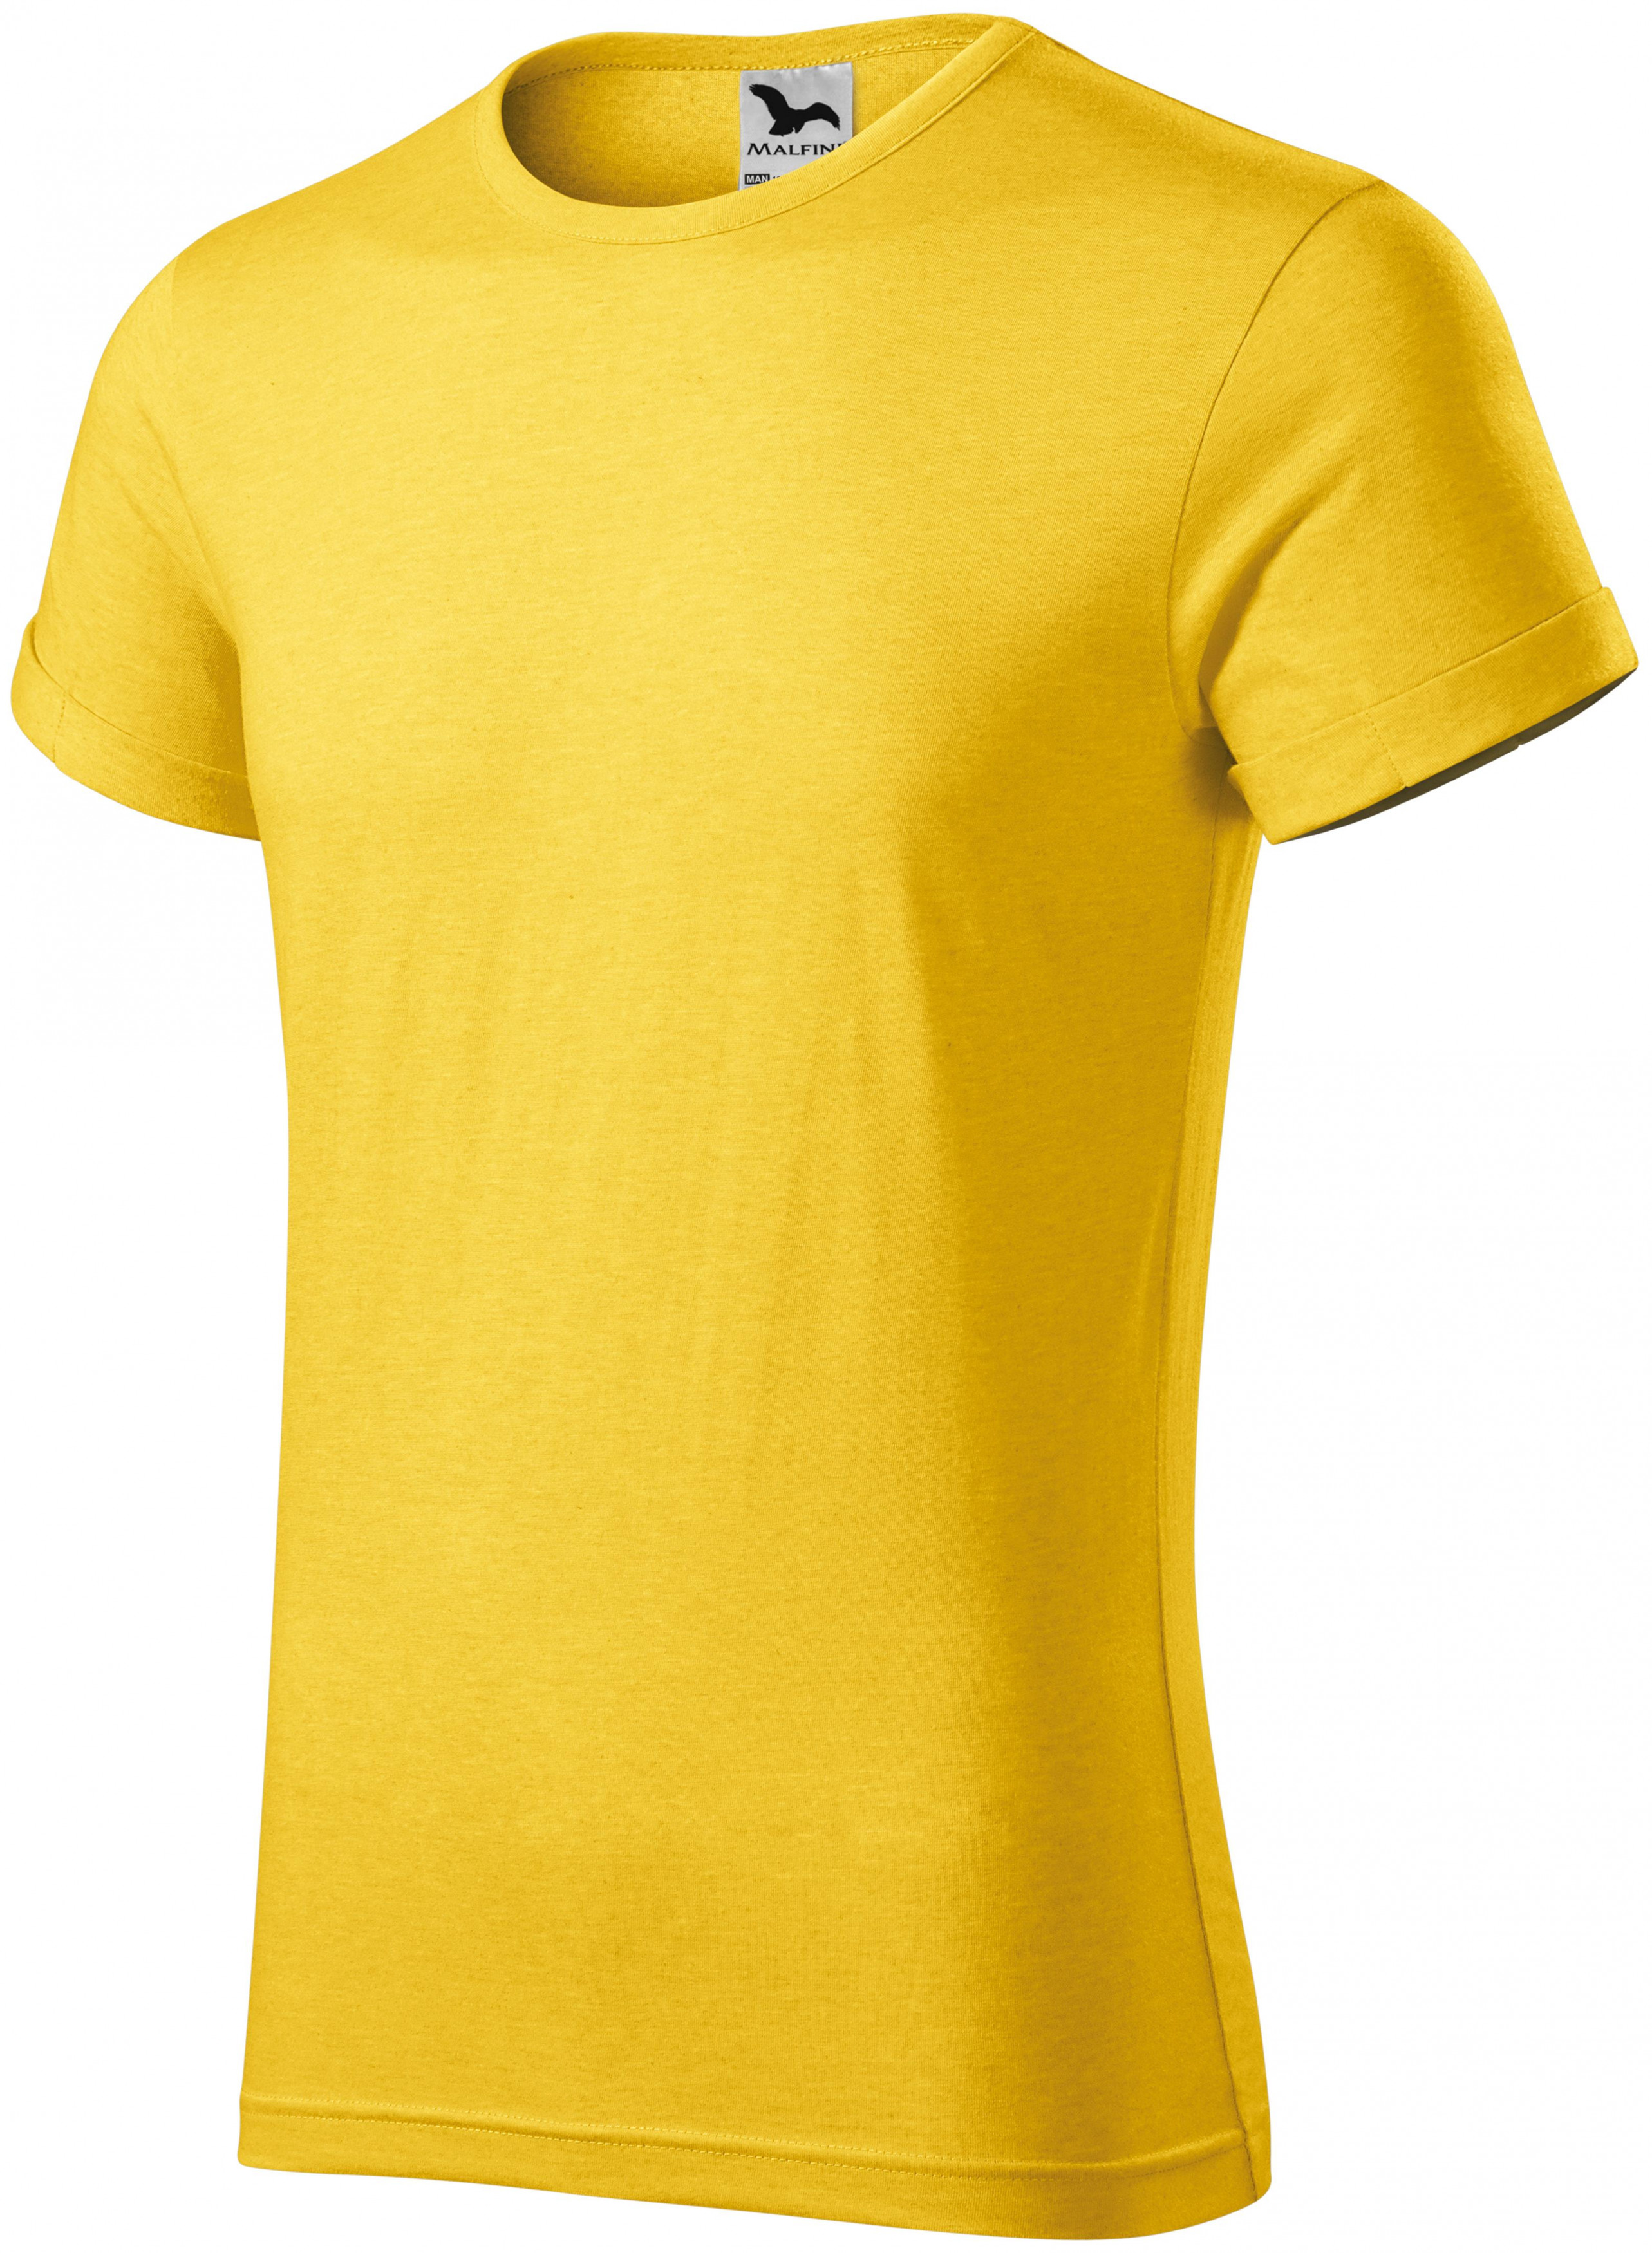 Pánske tričko s vyhrnutými rukávmi, žltý melír, XL